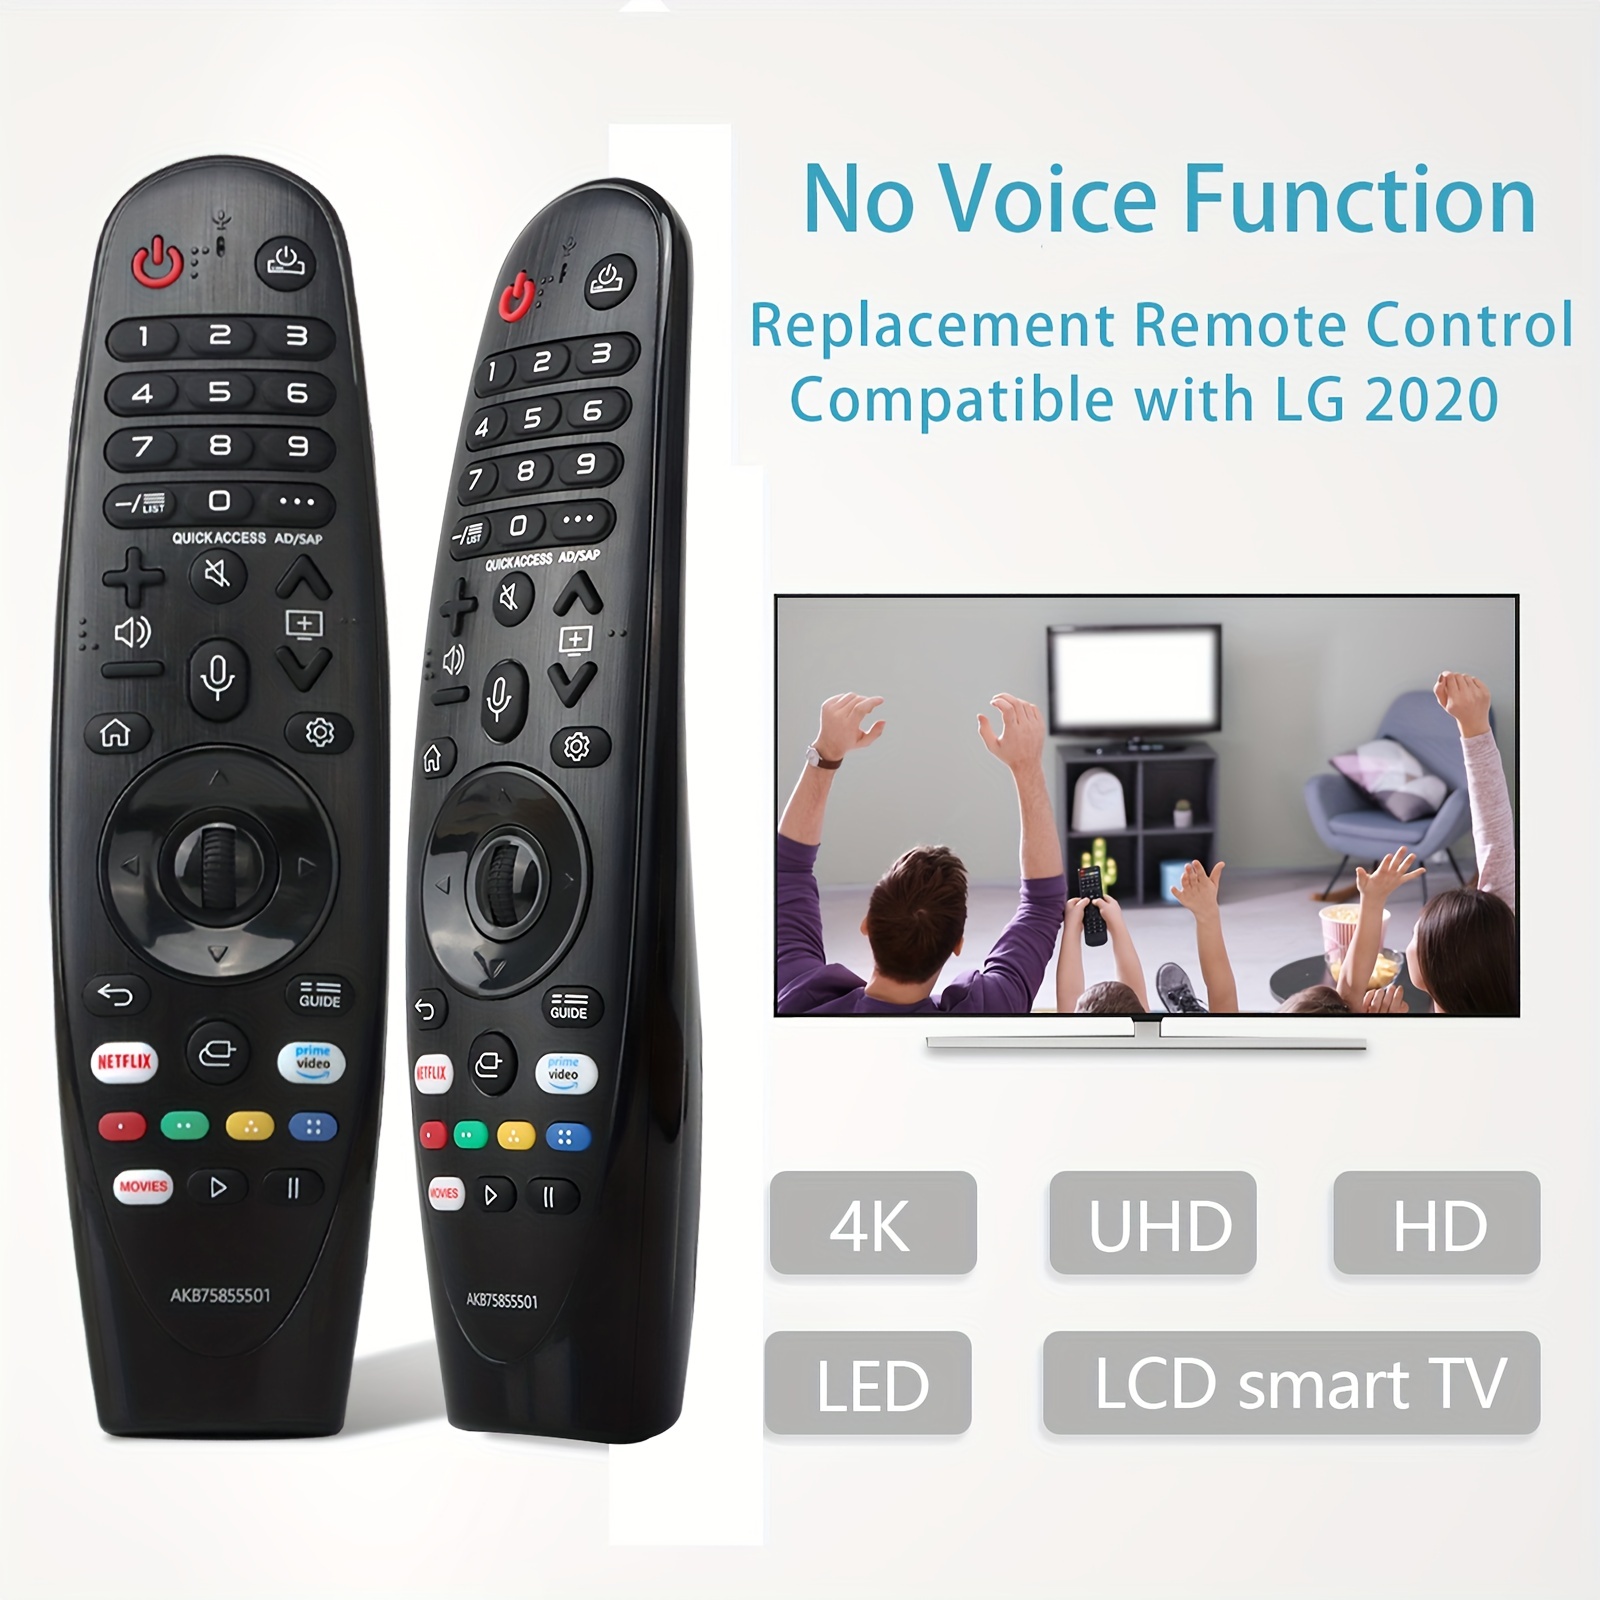 Mando a distancia universal para LG Smart TV Magic Remote Compatible con  todos los modelos de televisores LG (sin función de voz, sin función de